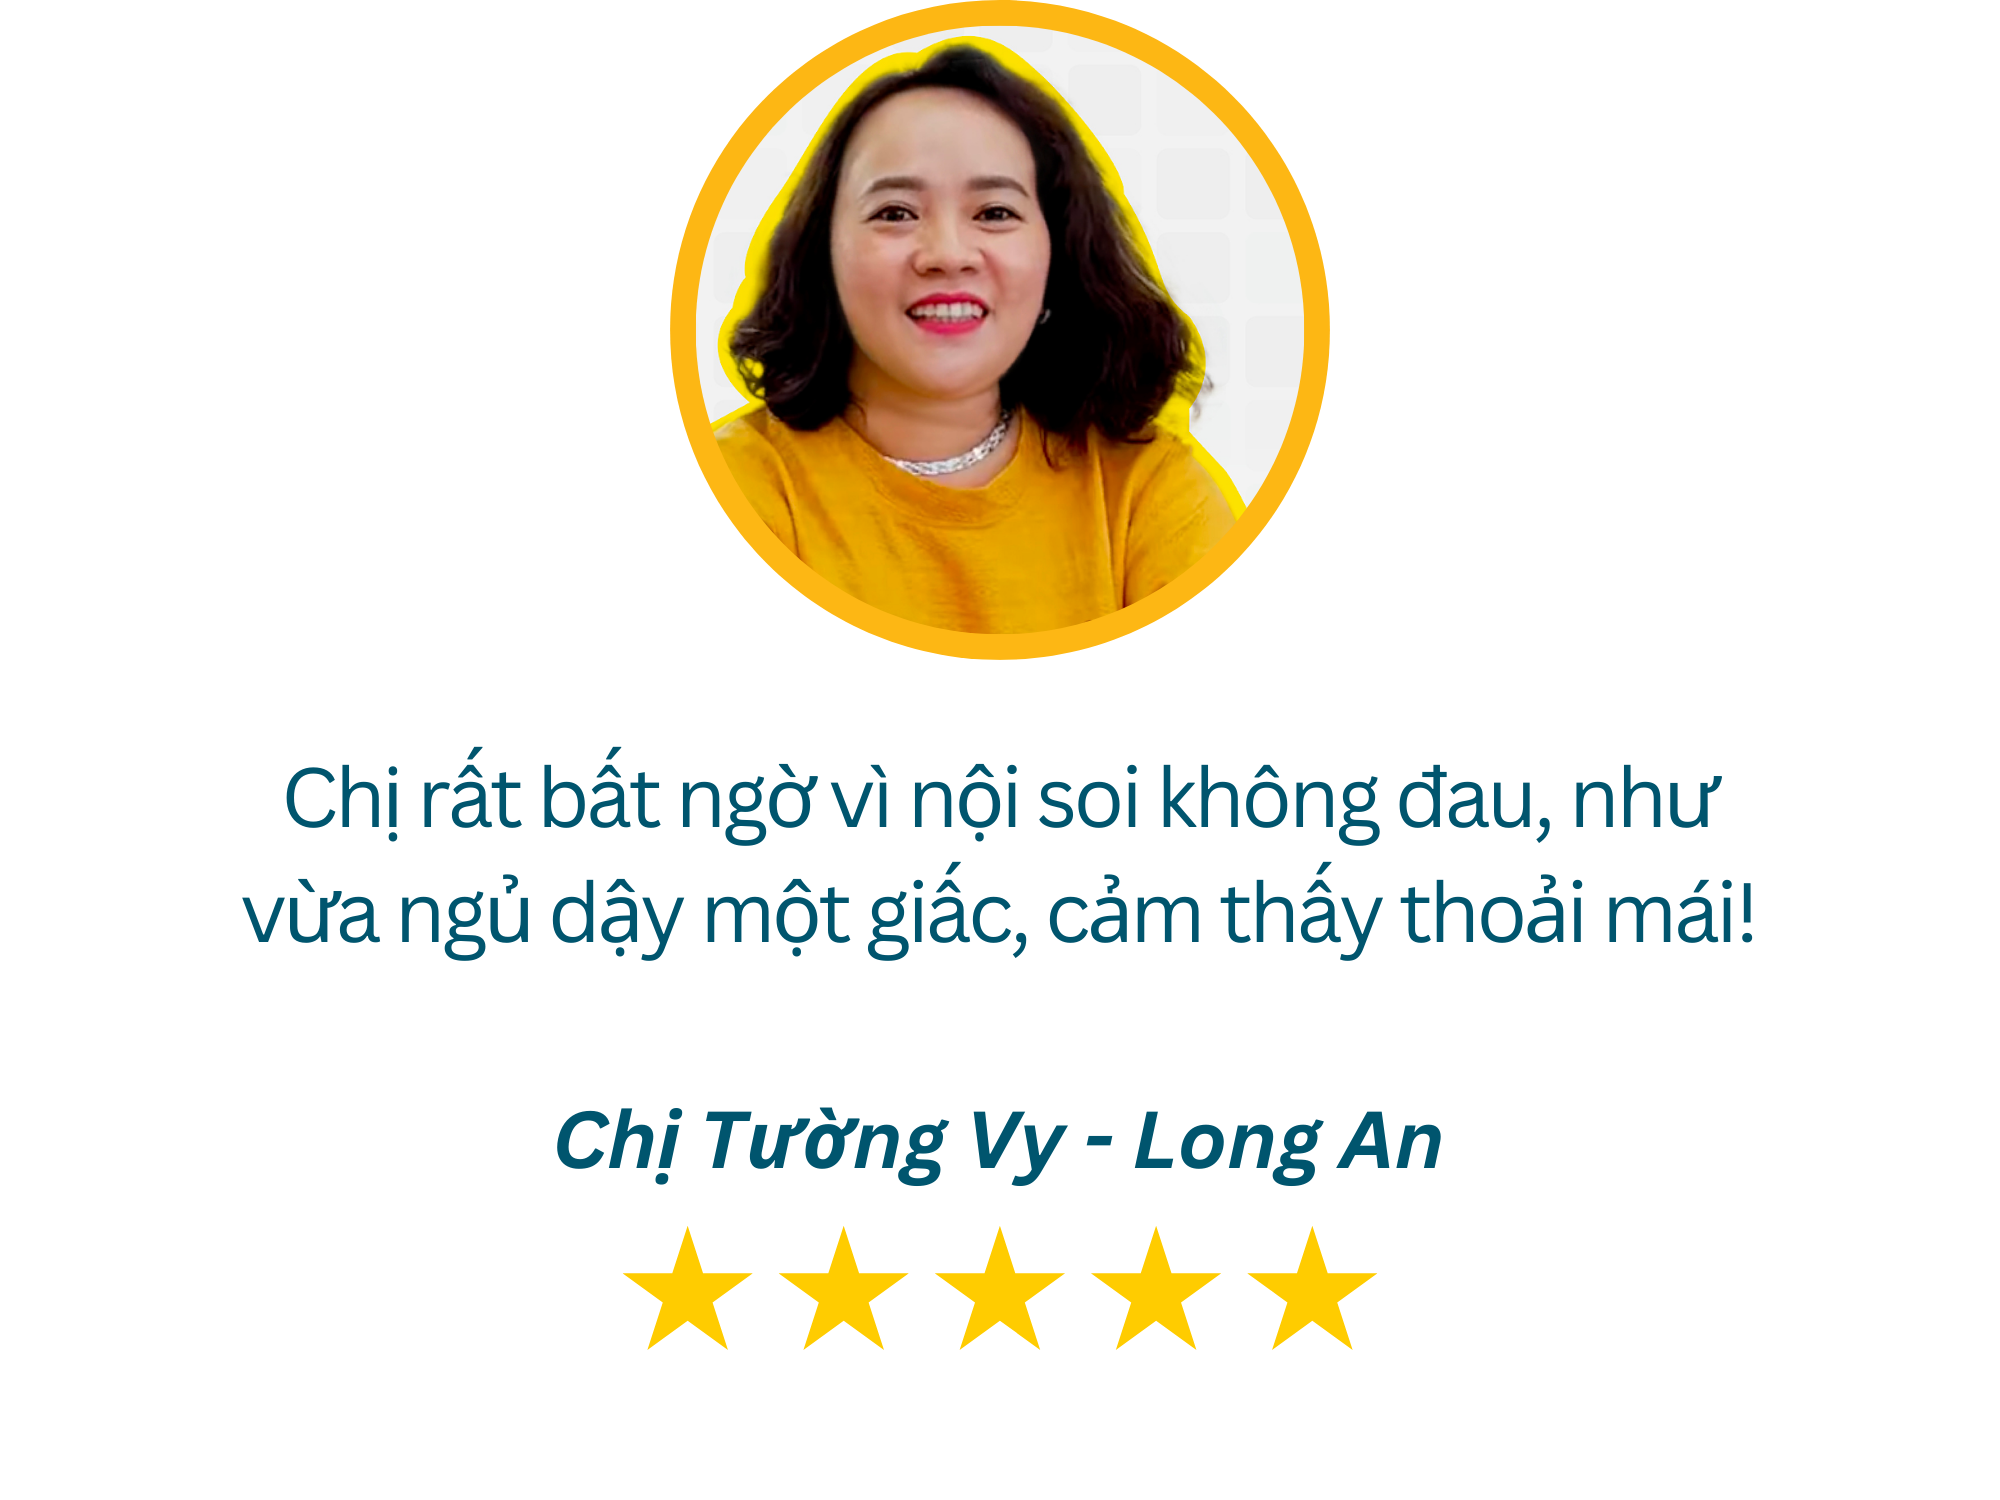 Review Tầm Soát Ung Thư Dạ Dày - 2